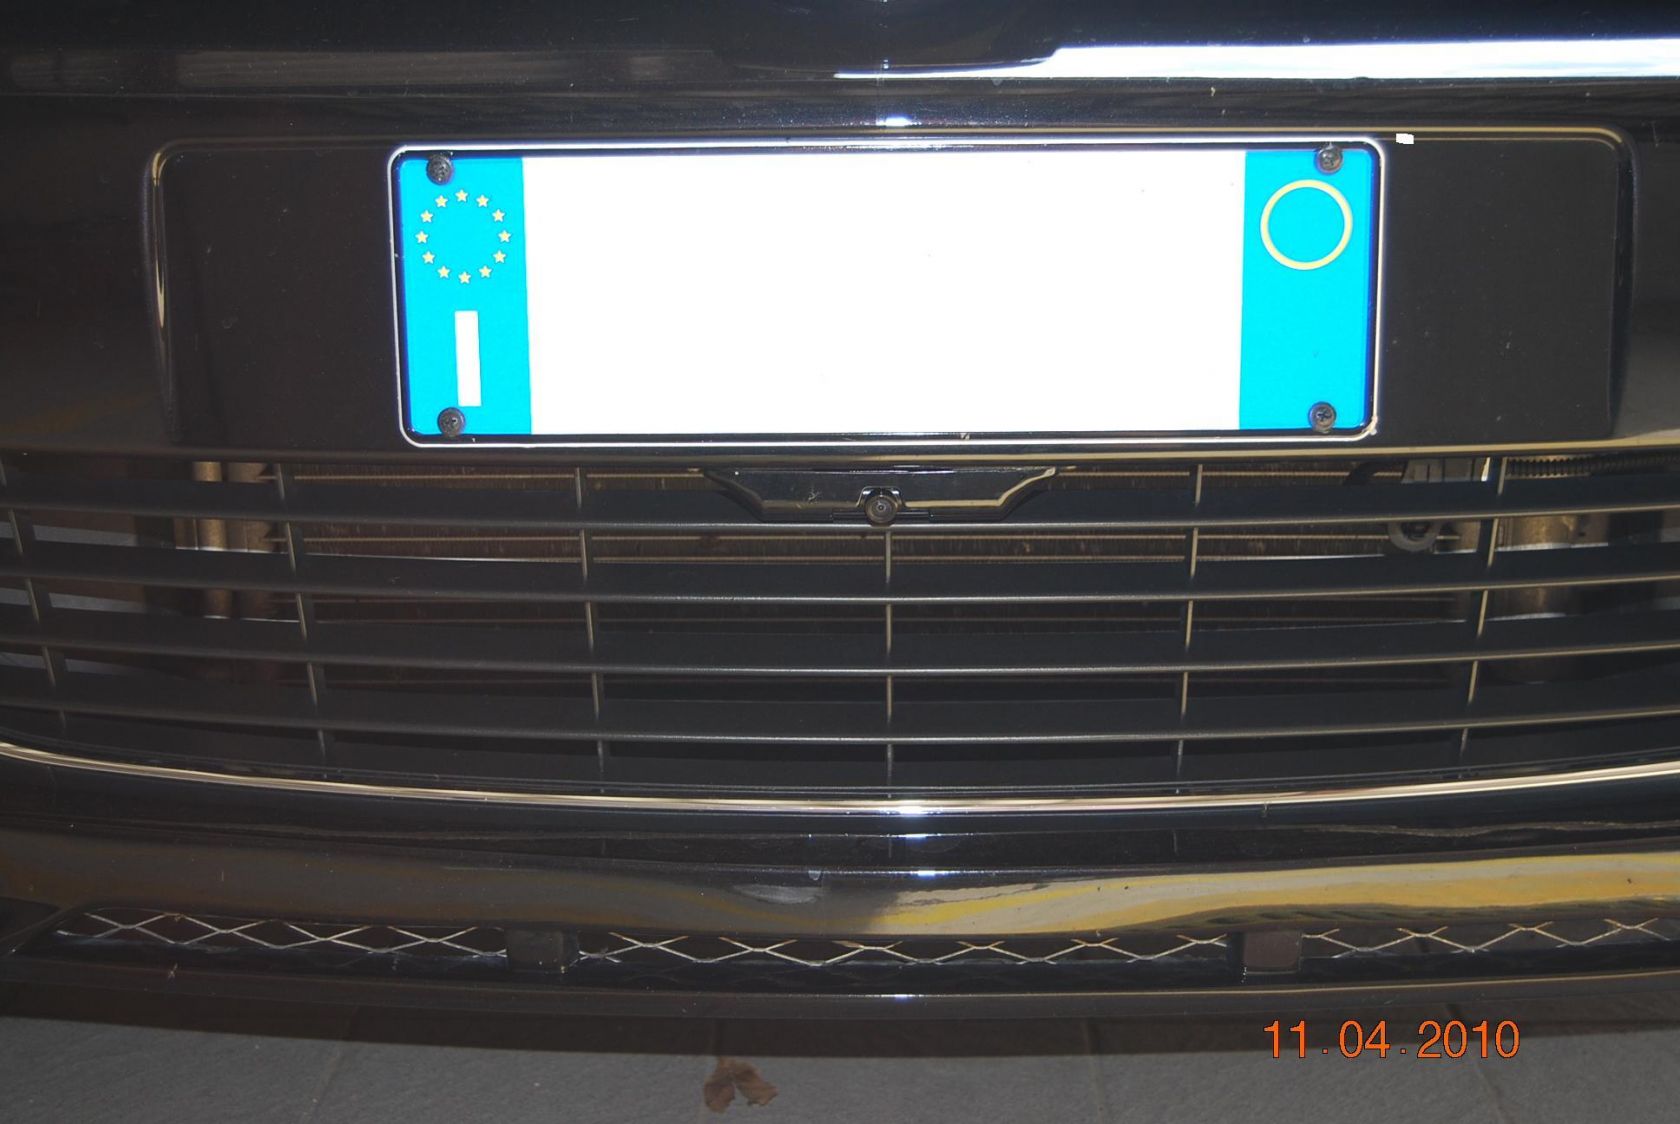 Telecamera sotto targa anteriore collegata con monitor
